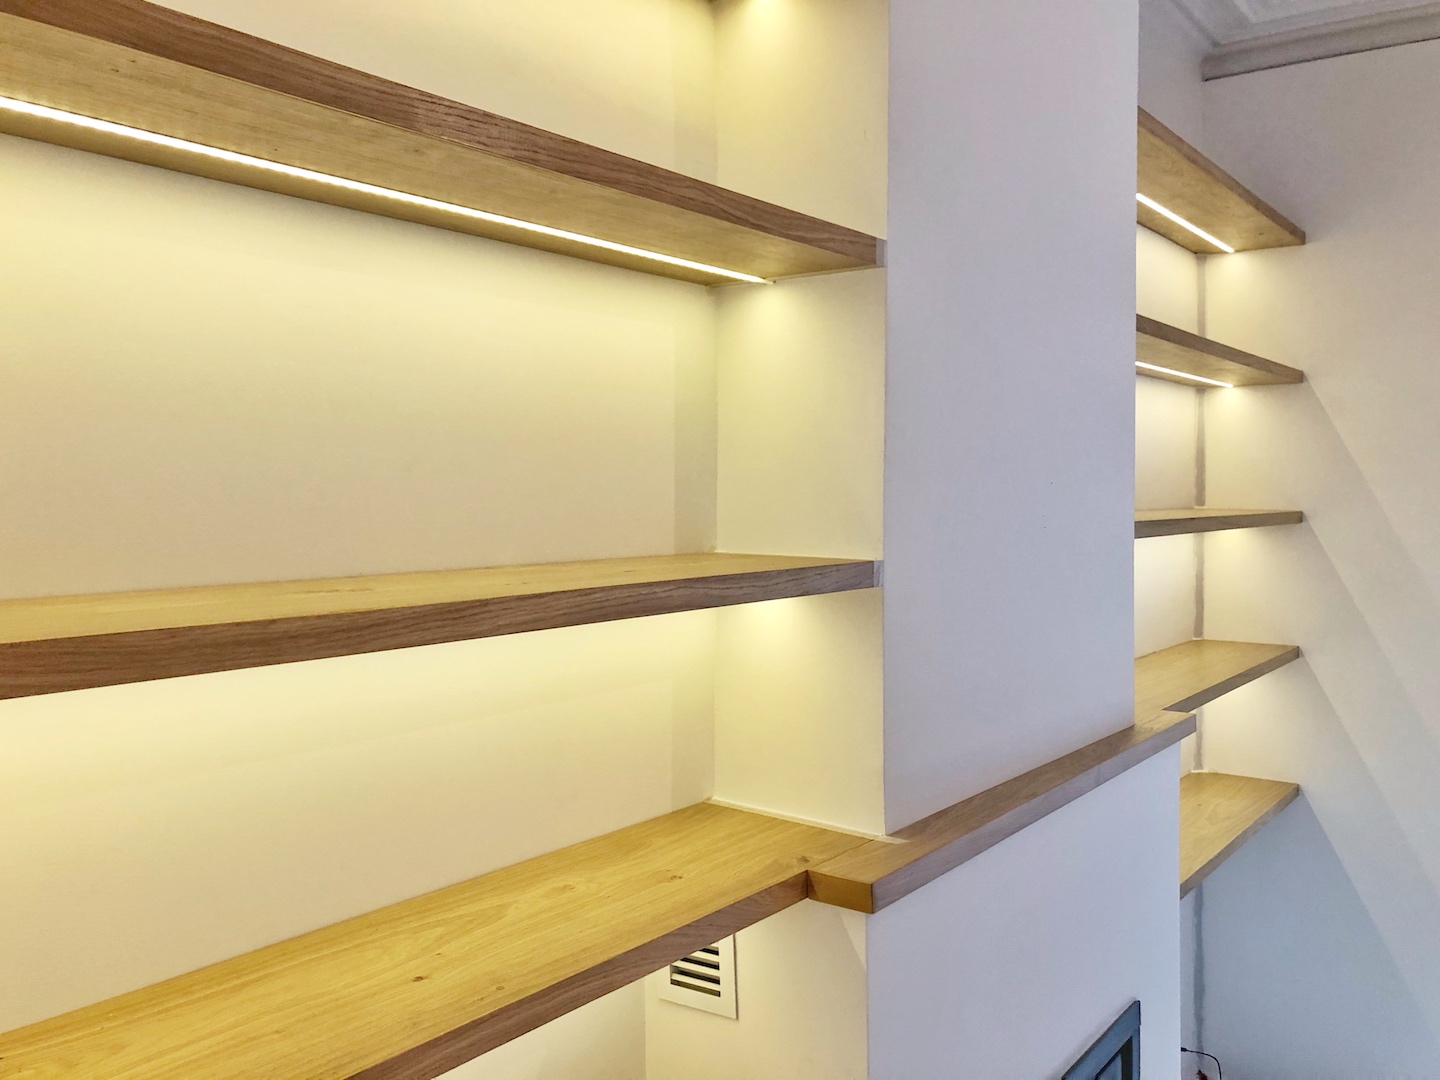 Bibliothèque en chêne à fixations invisibles et éclairage LED